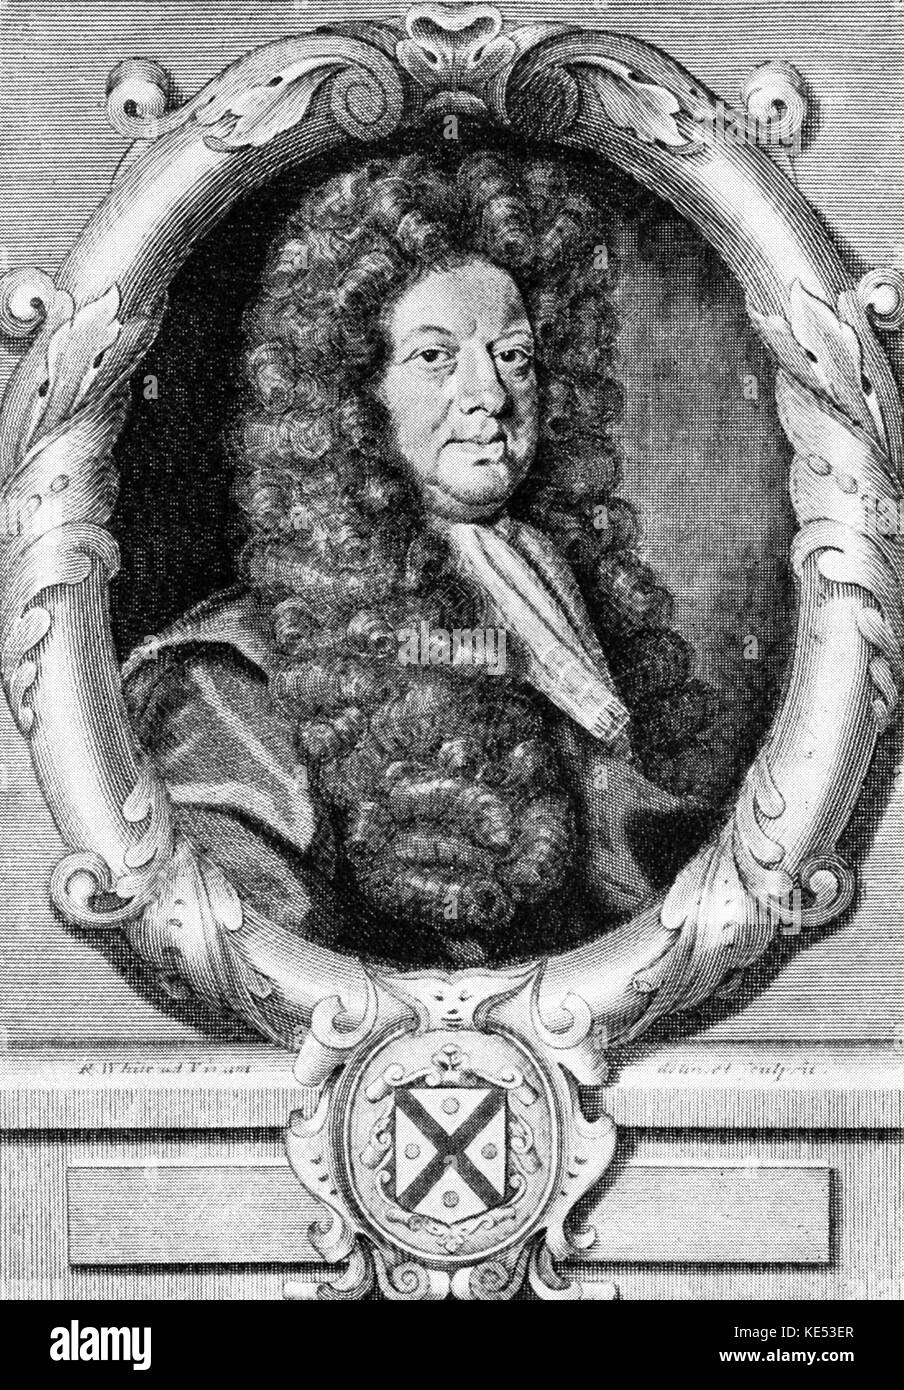 John Blow, englischer Komponist von Kirchenmusik, Organist der Westminster Abbey und Master an H.Purcell. JB: 1649-1708. Kupferstich von Robert Weiß. Stockfoto